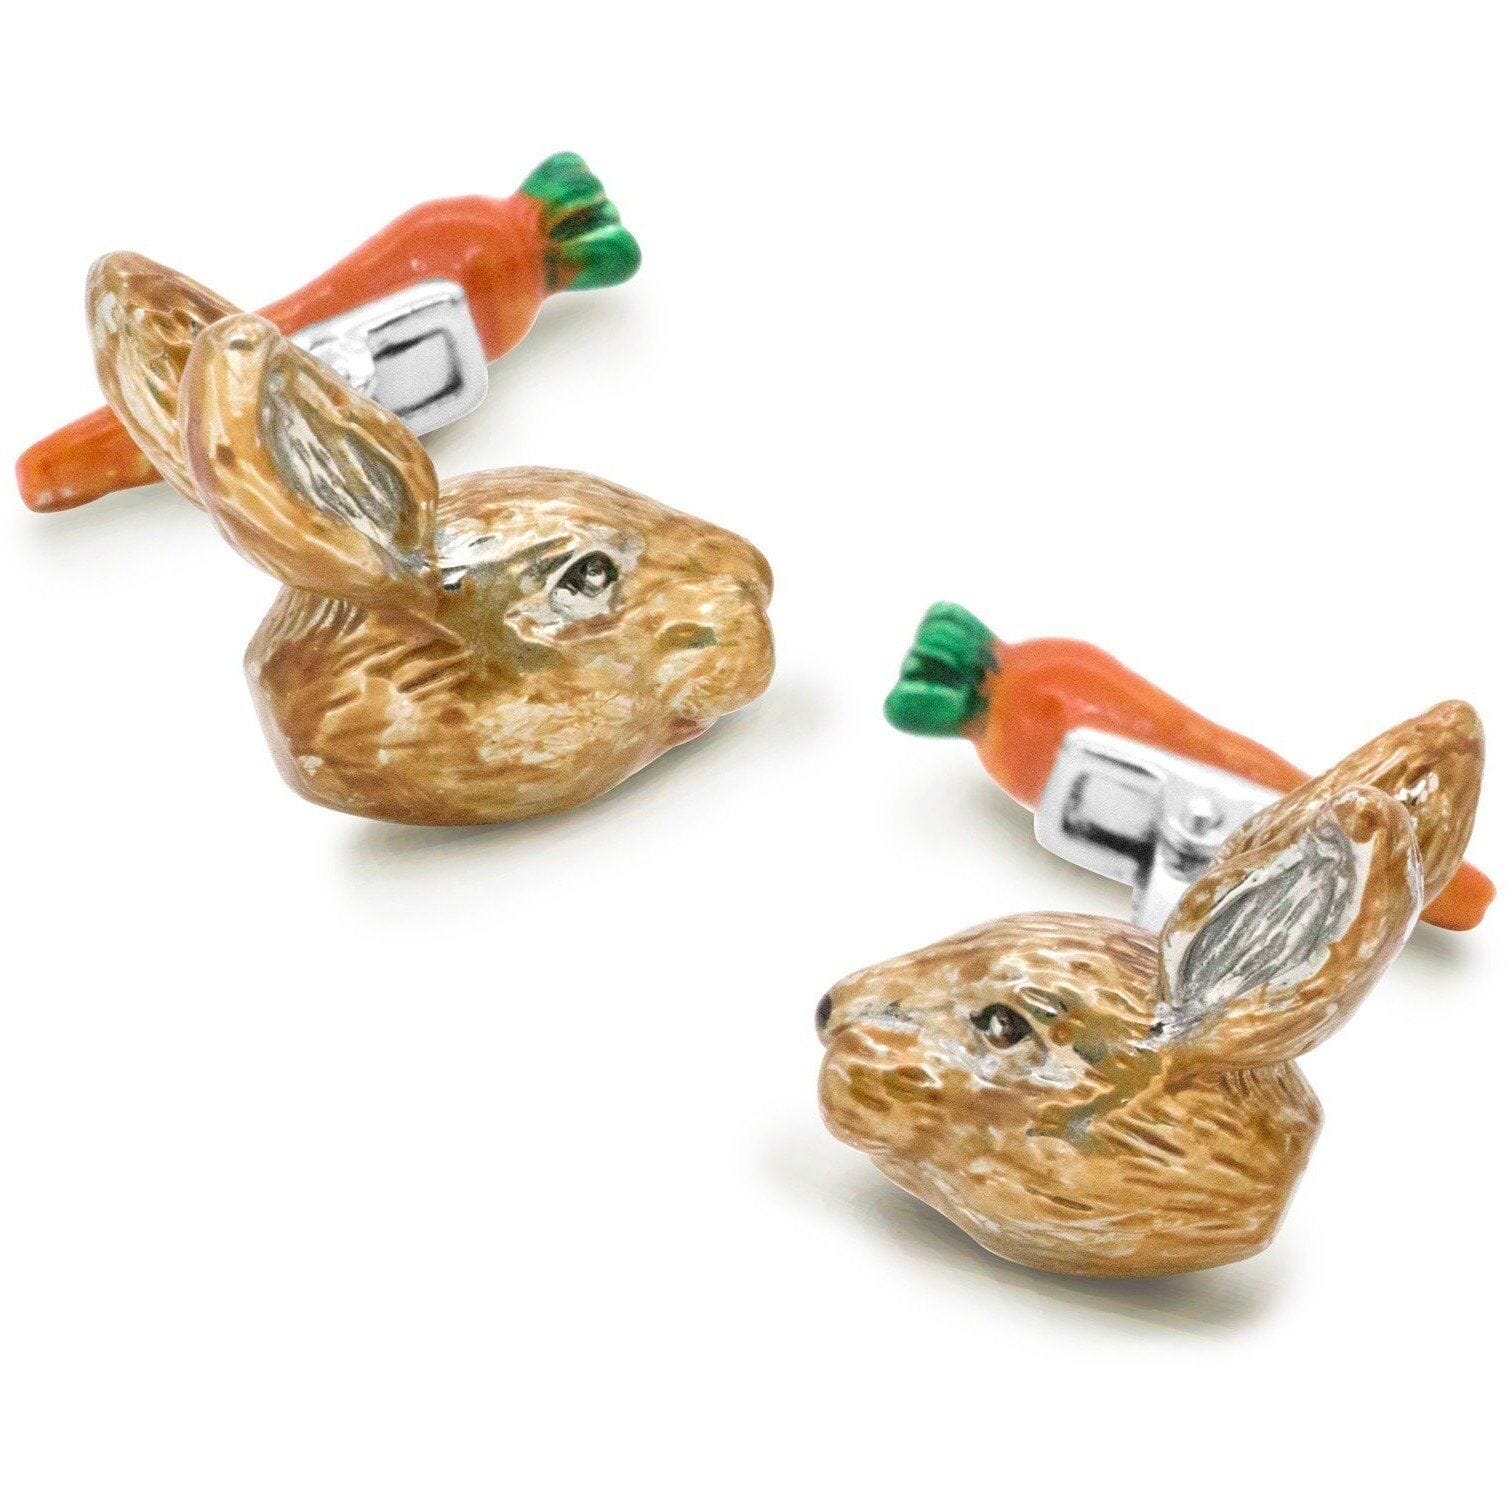 Colour Bunny Rabbit Head and Carrot Back Cufflinks Novelty Cufflinks Clinks Australia Colour Bunny Rabbit Head and Carrot Back Cufflinks 